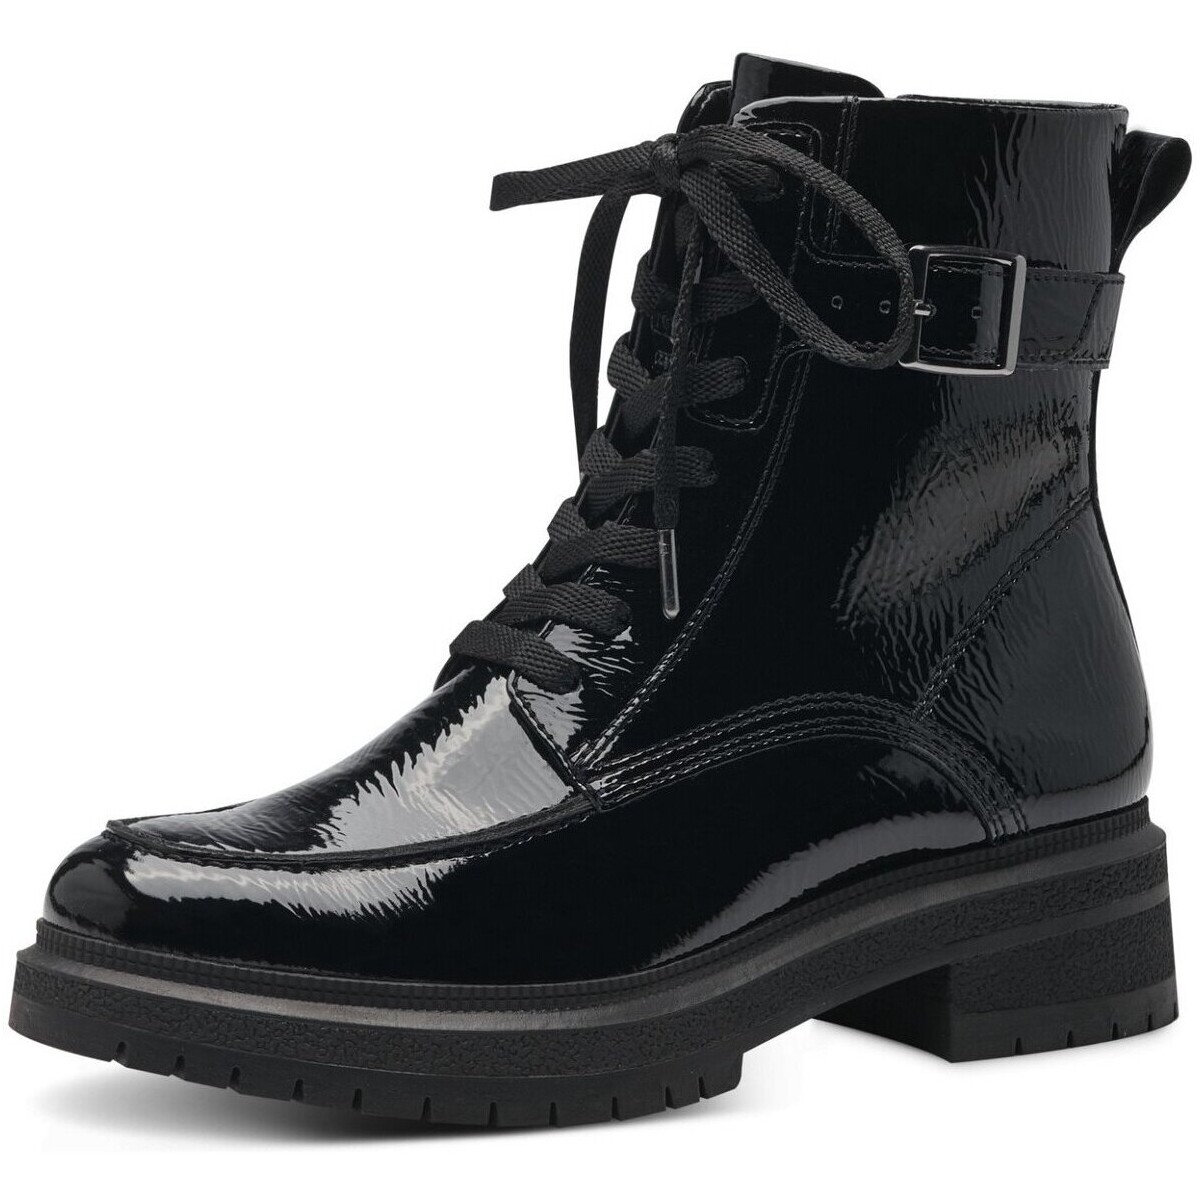 Schuhe Damen Stiefel Tamaris Stiefeletten Woms Boots 1-25261-41/018 Schwarz